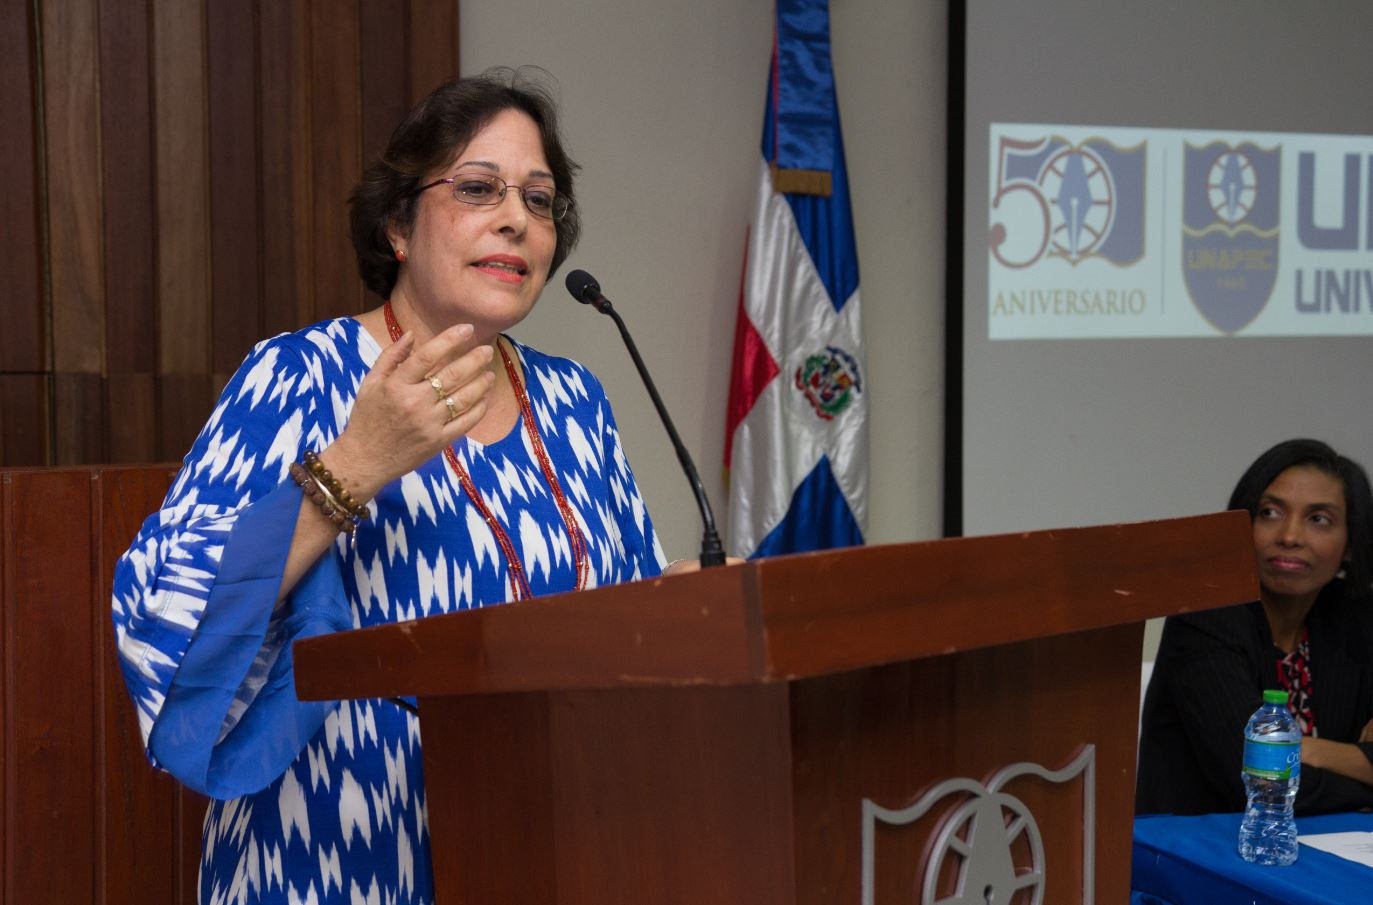 Encargada de la oficina de Publicaciones de UNAPEC, Rosmina Valdez, quien ofreció un emotivo discurso a los presentes acerca de la superación como docentes y seres humanos.